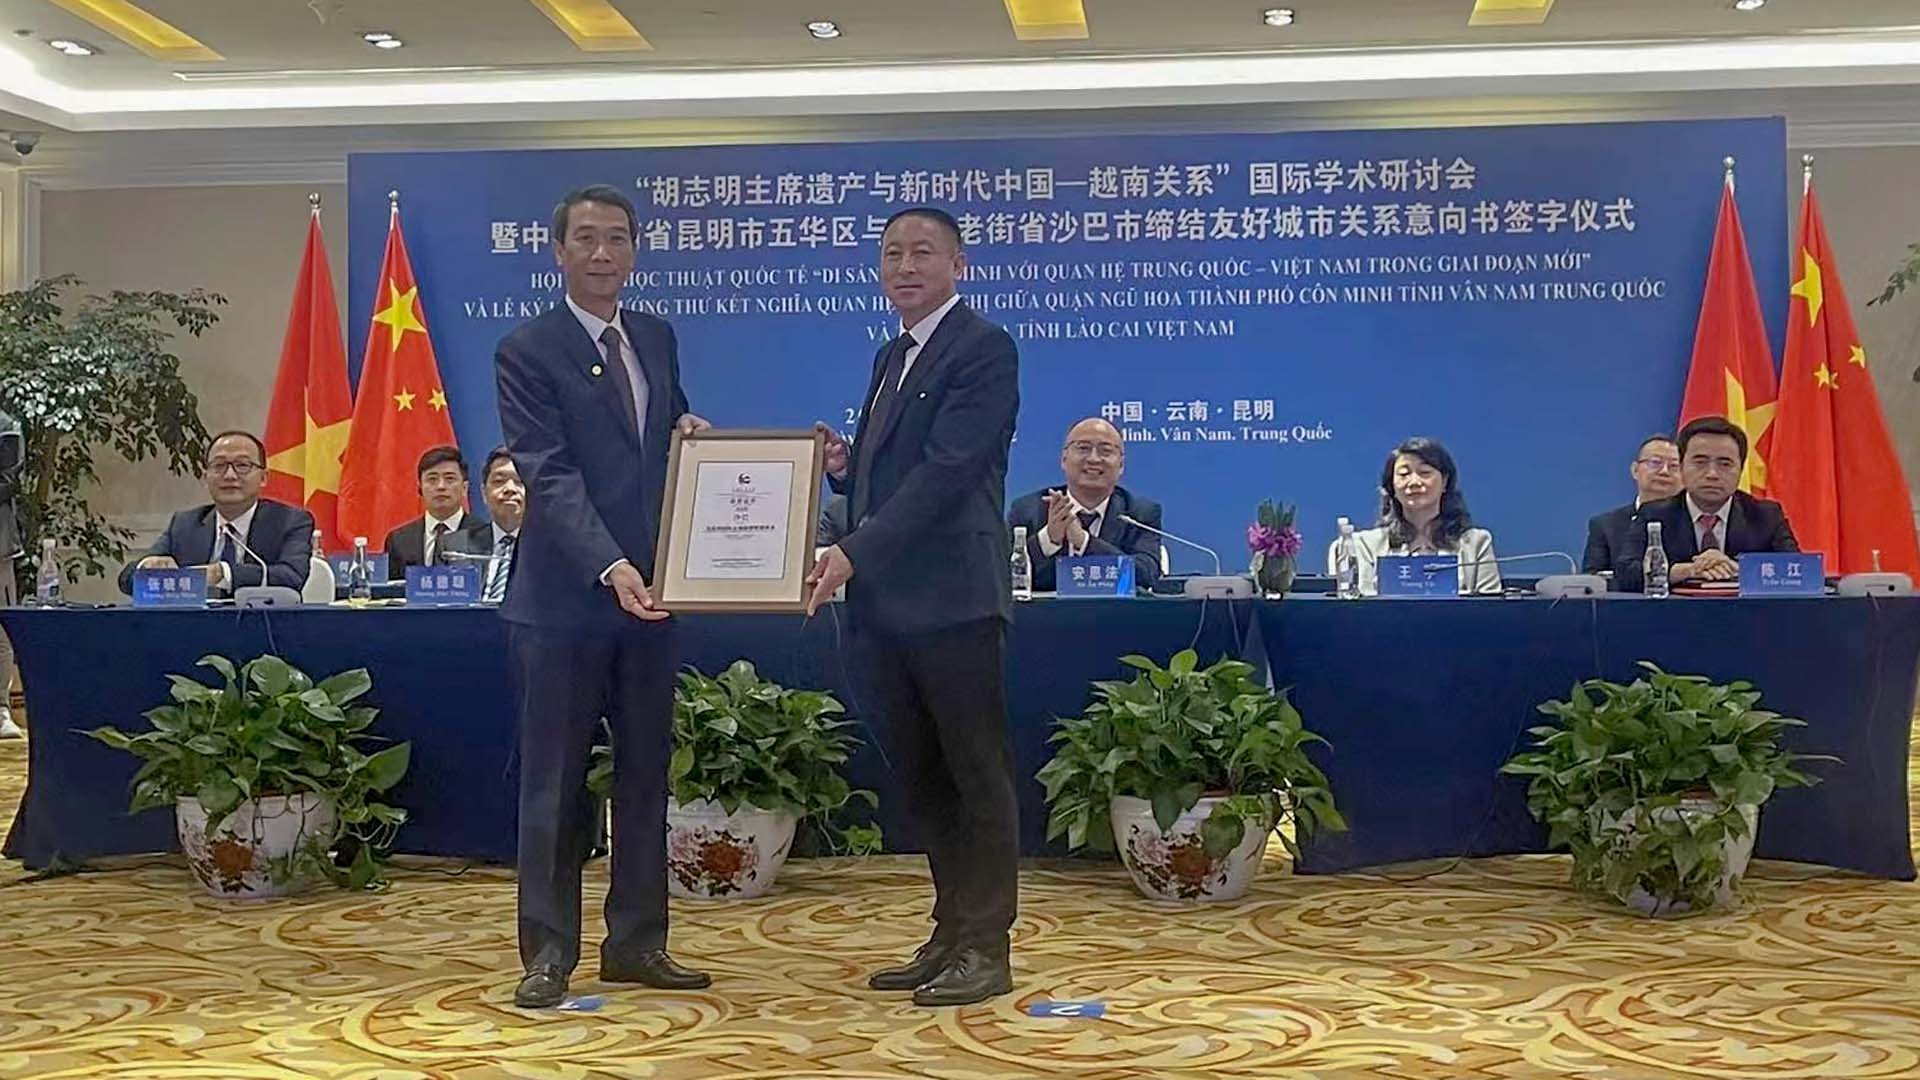 Tổng lãnh sự Việt Nam tại Côn Minh Nguyễn Trung Hiếu thay mặt thị xã Sapa tiếp nhận Giấy chứng nhận gia nhập Liên minh du lịch quốc tế các thành phố hữu nghị thành phố Côn Minh.